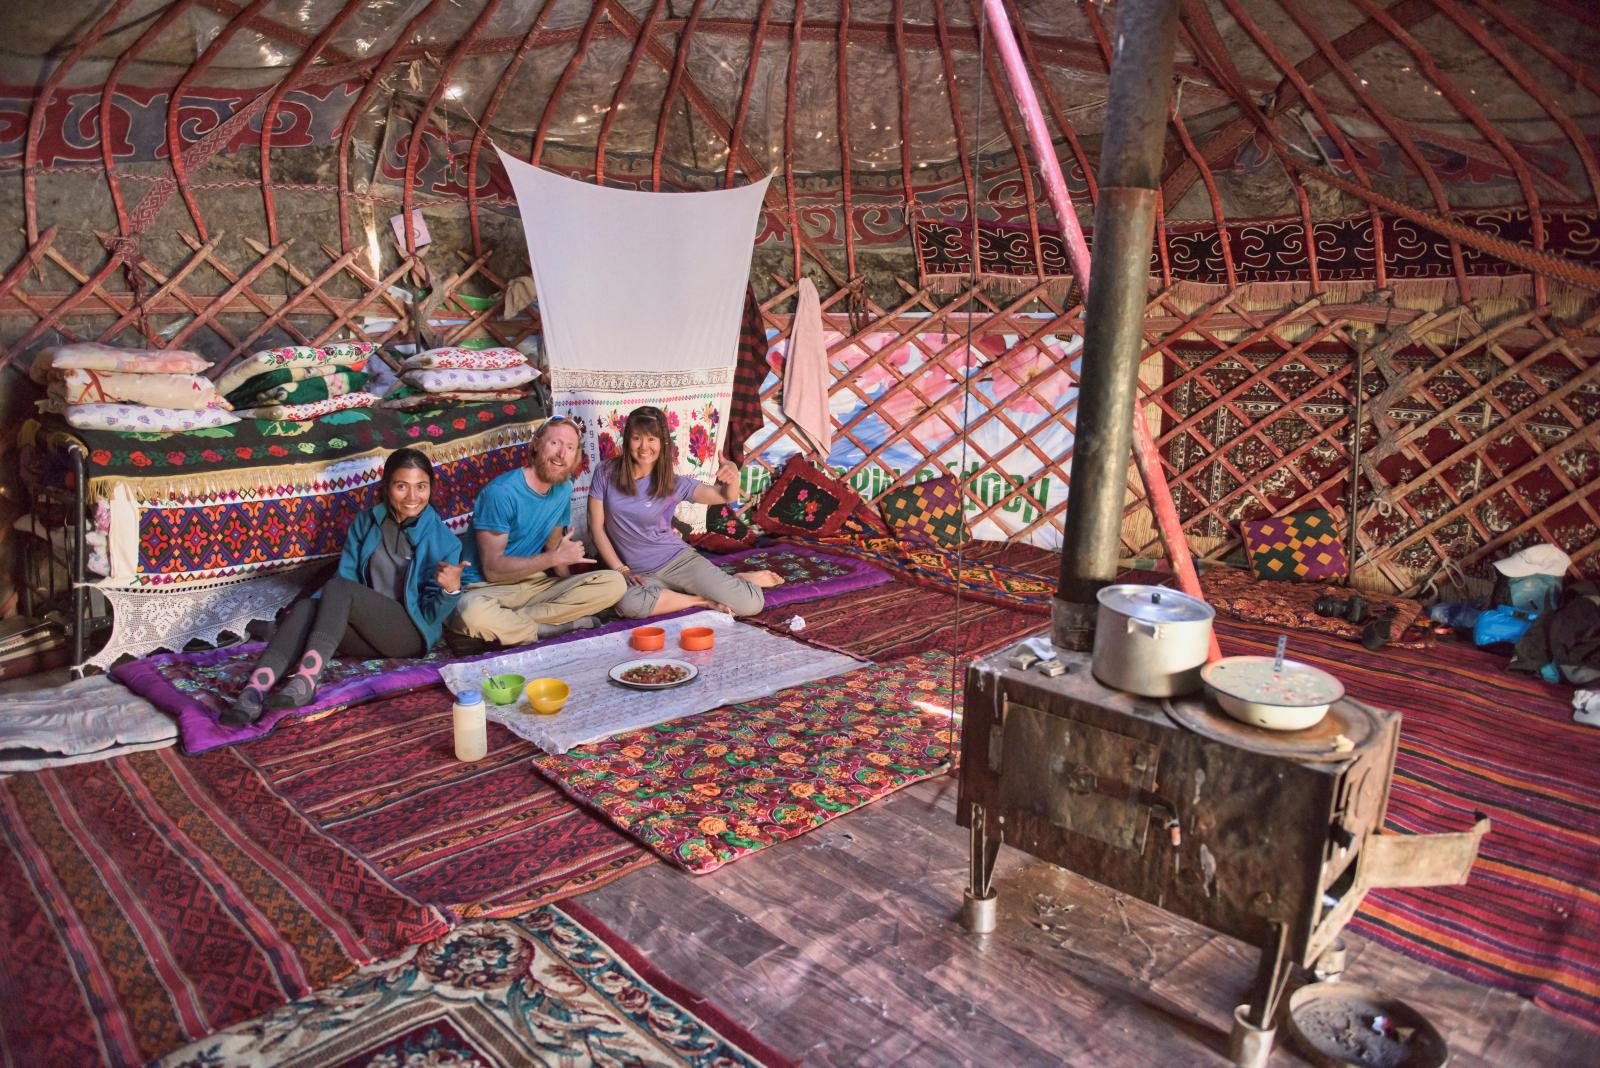 Прекрасные орнаменты, природа и в то же время бедность: реальные отзывы туристов о путешествии в Таджикистан - image 2